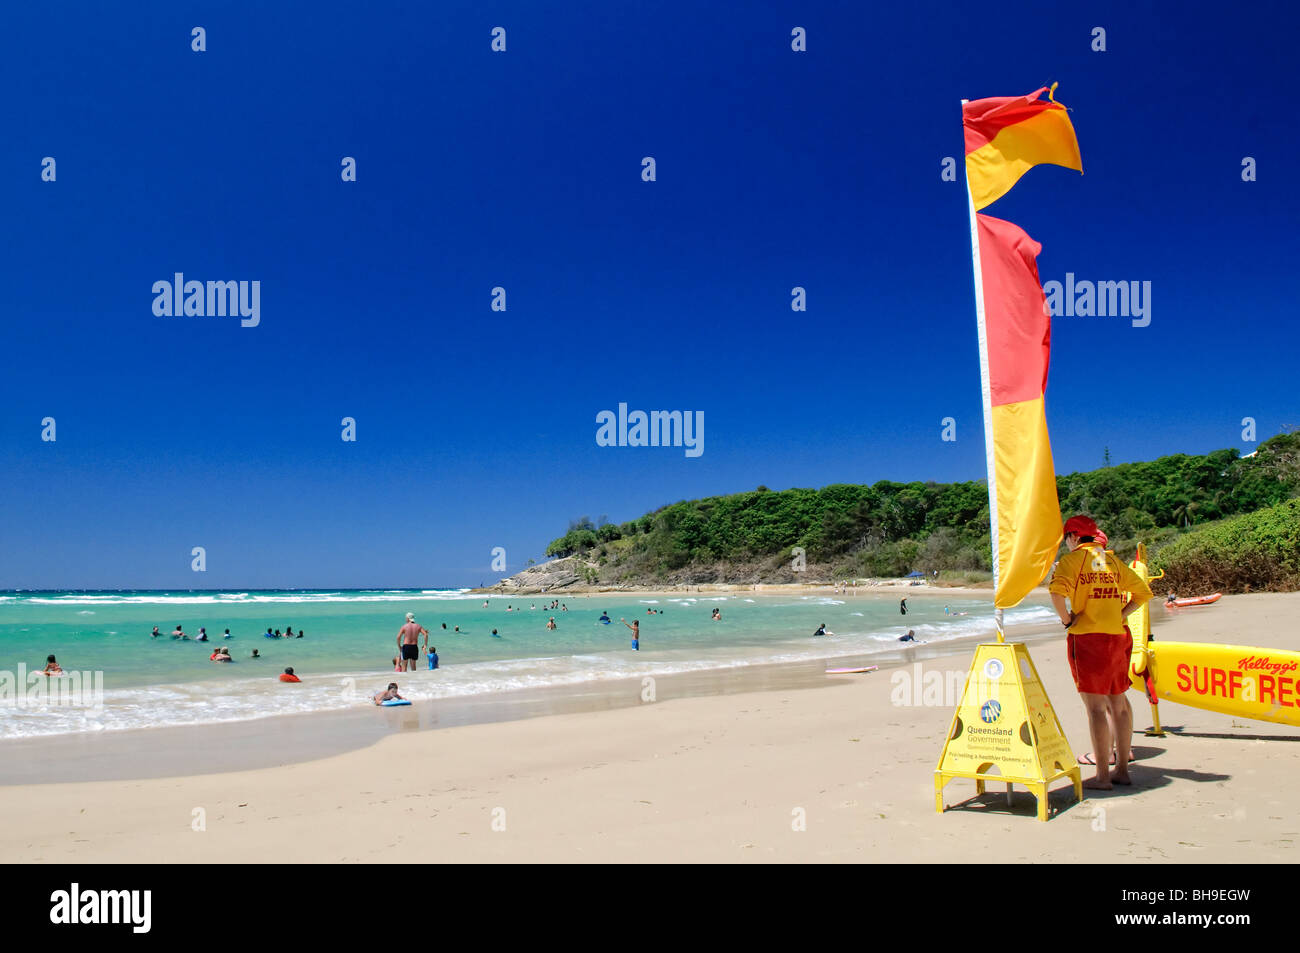 NORTH Stradbroke Island, Australien - Zylinder Strand auf North Stradbroke Island, Queensland, Australien North Stradbroke Island, nur von Queenslands Hauptstadt Brisbane, ist der weltweit zweitgrößte Sand Insel und mit seinen kilometerlangen Sandstrände, die im Sommer ein beliebtes Urlaubsziel. Stockfoto